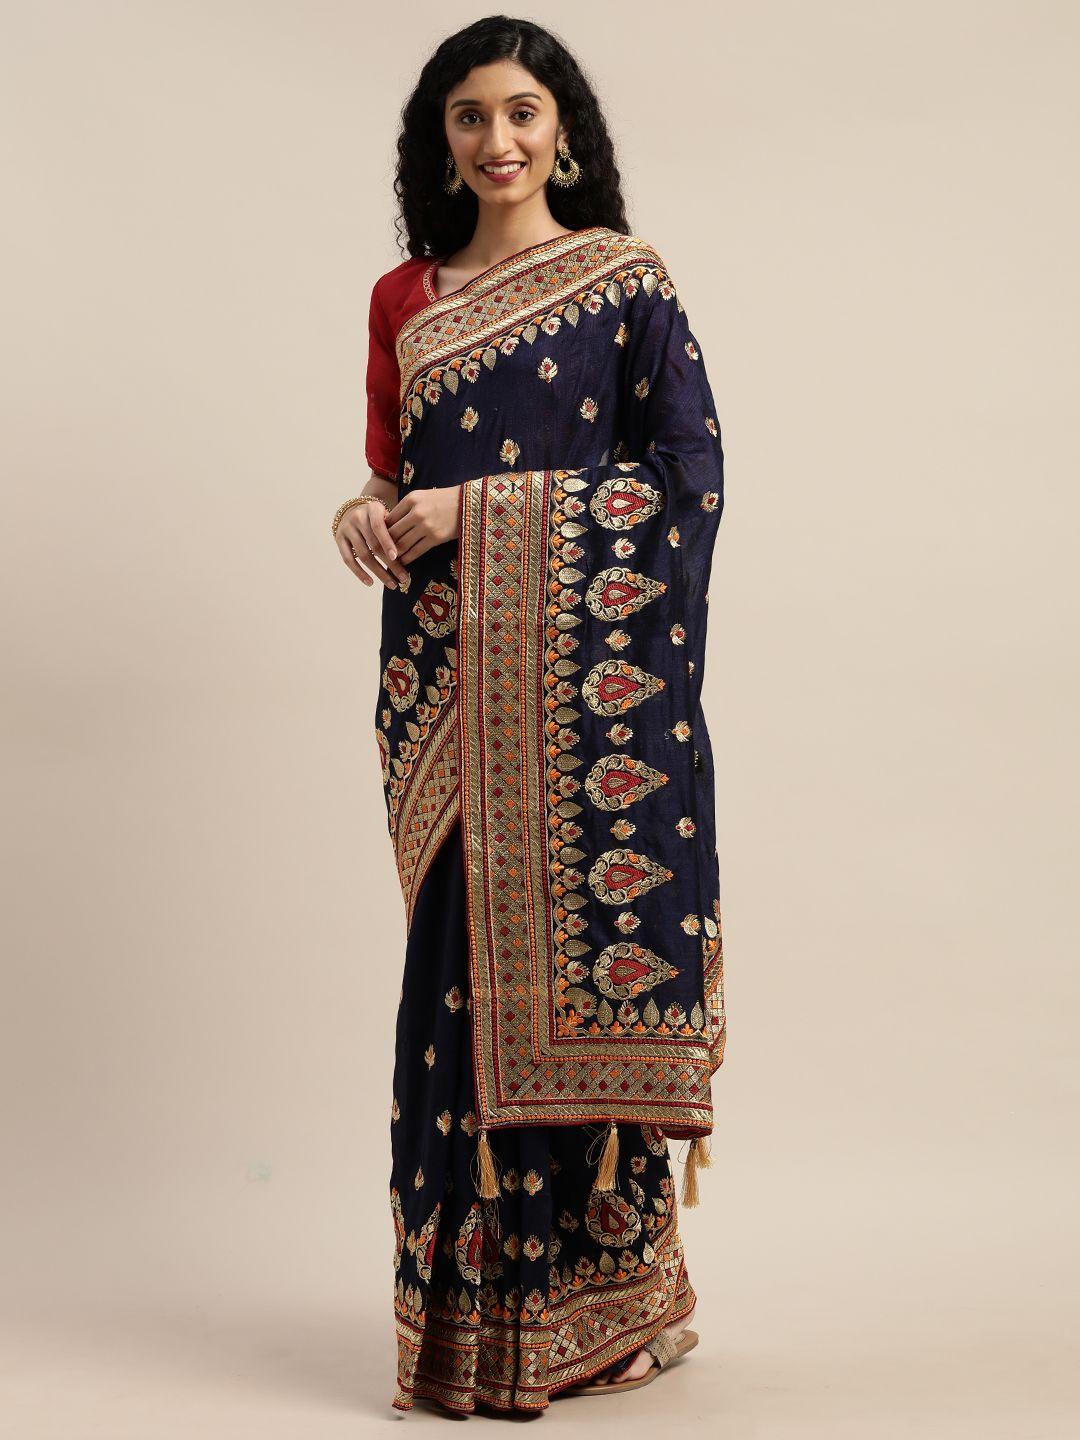 om shantam sarees navy blue embroidered poly crepe saree